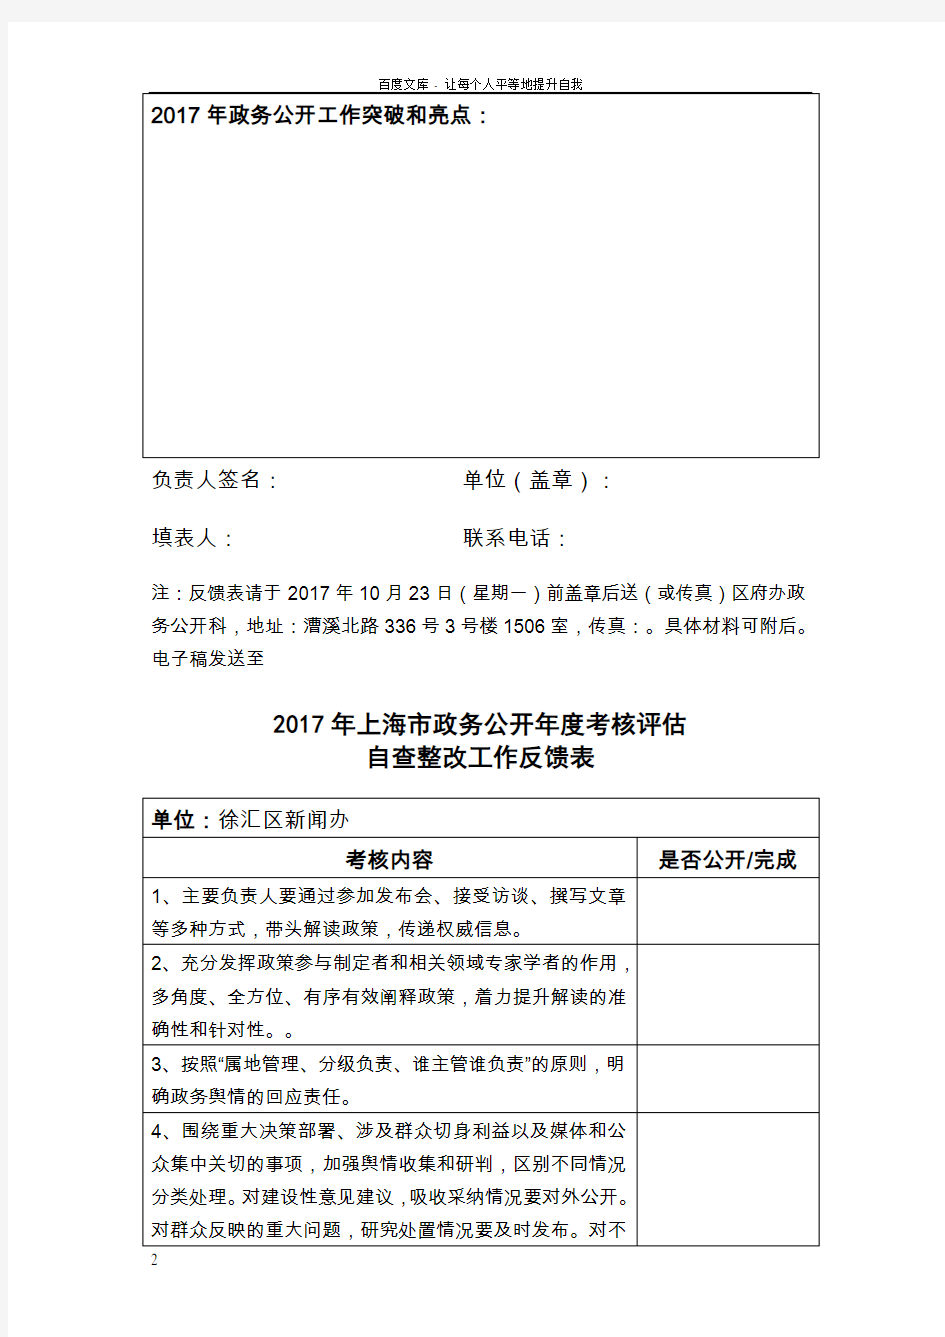 2017年上海政务公开考核